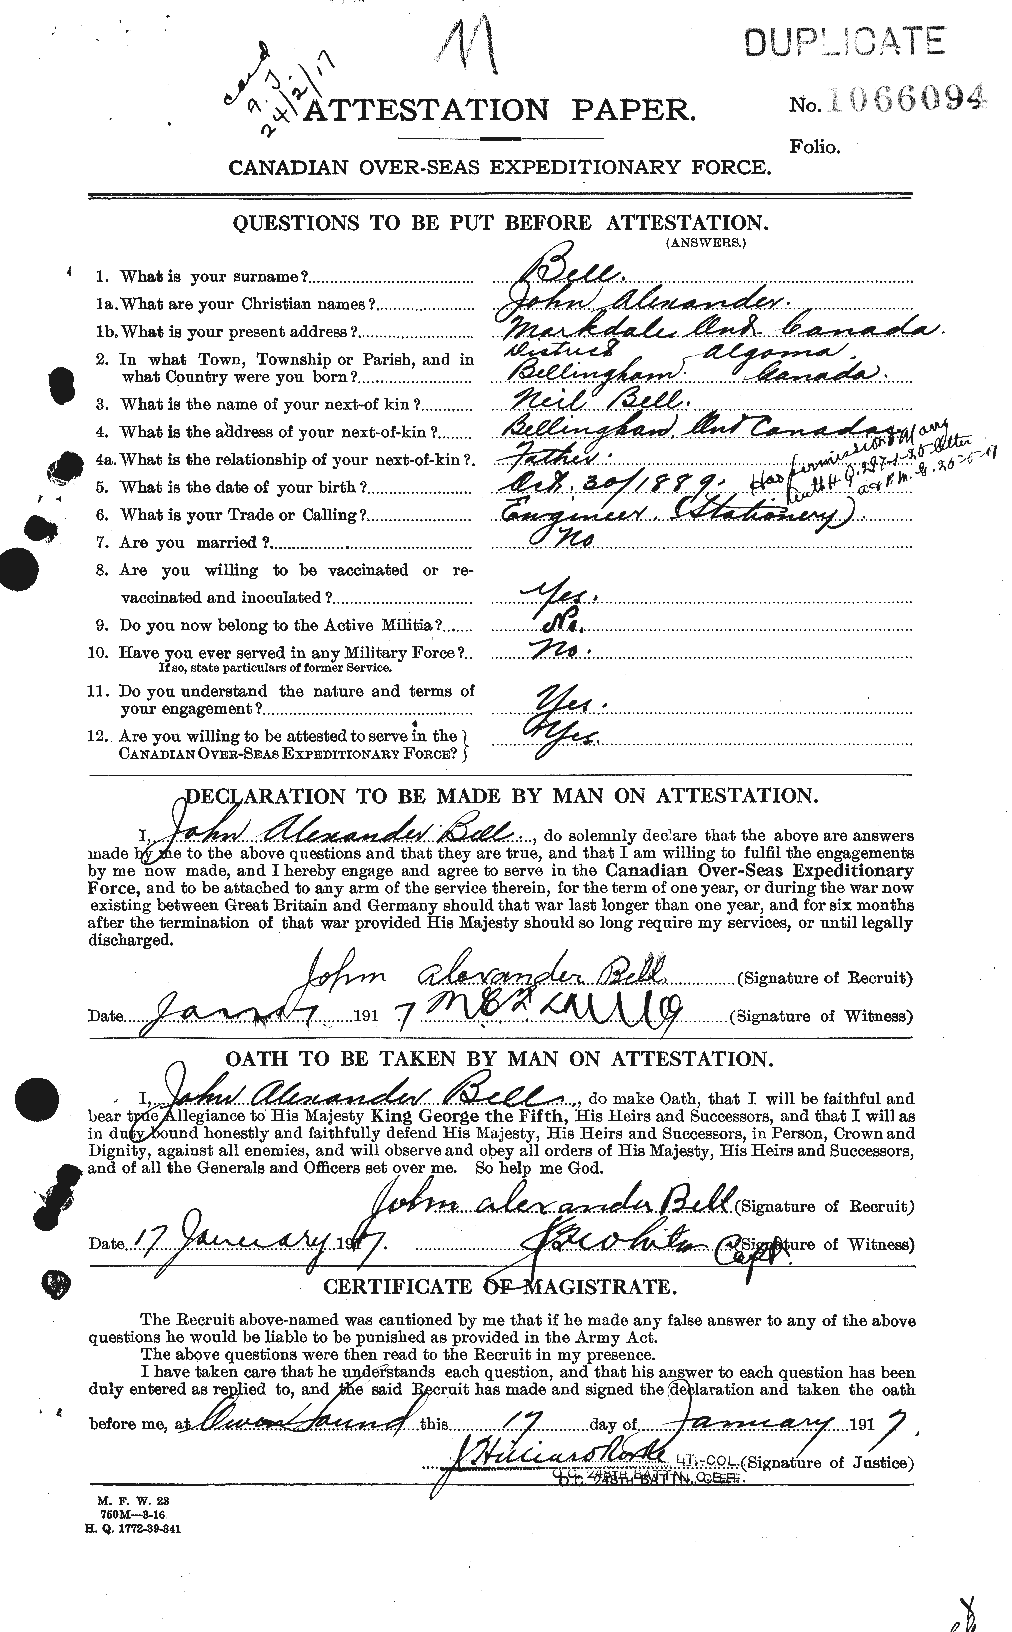 Dossiers du Personnel de la Première Guerre mondiale - CEC 236860a